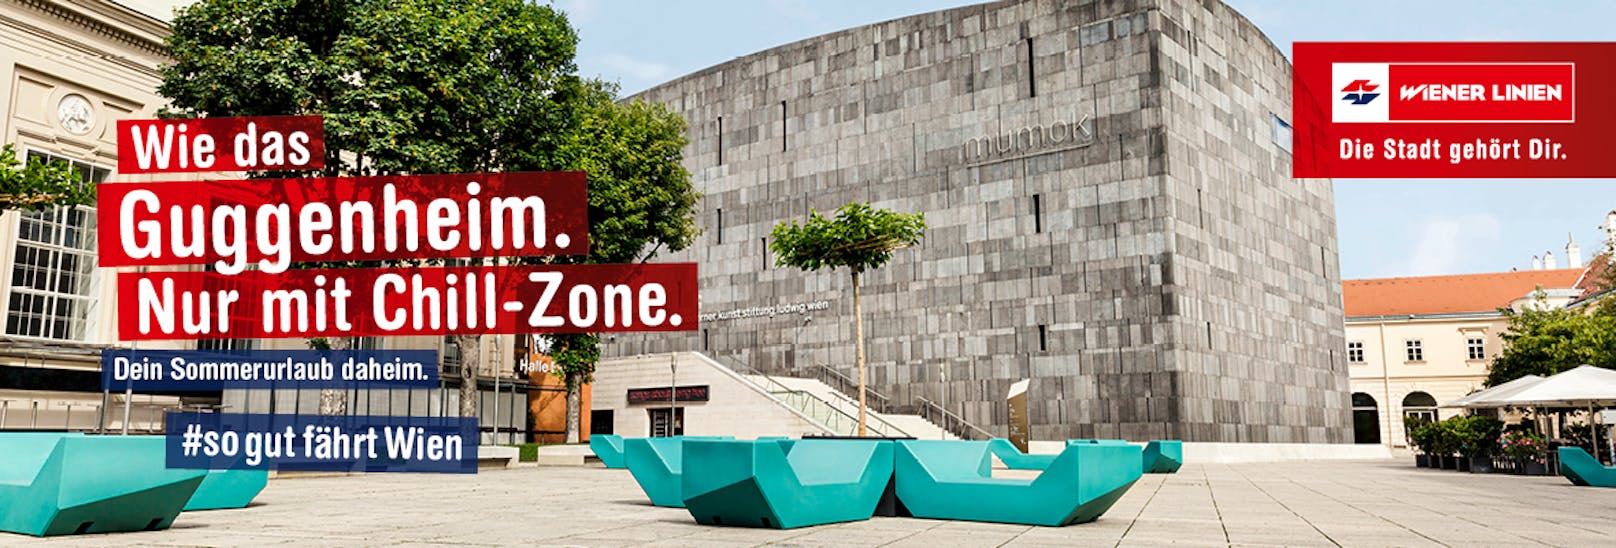 Das Museumsquartier wird in der Kampagne zum Guggenheim Museum mit Chill-Zone.